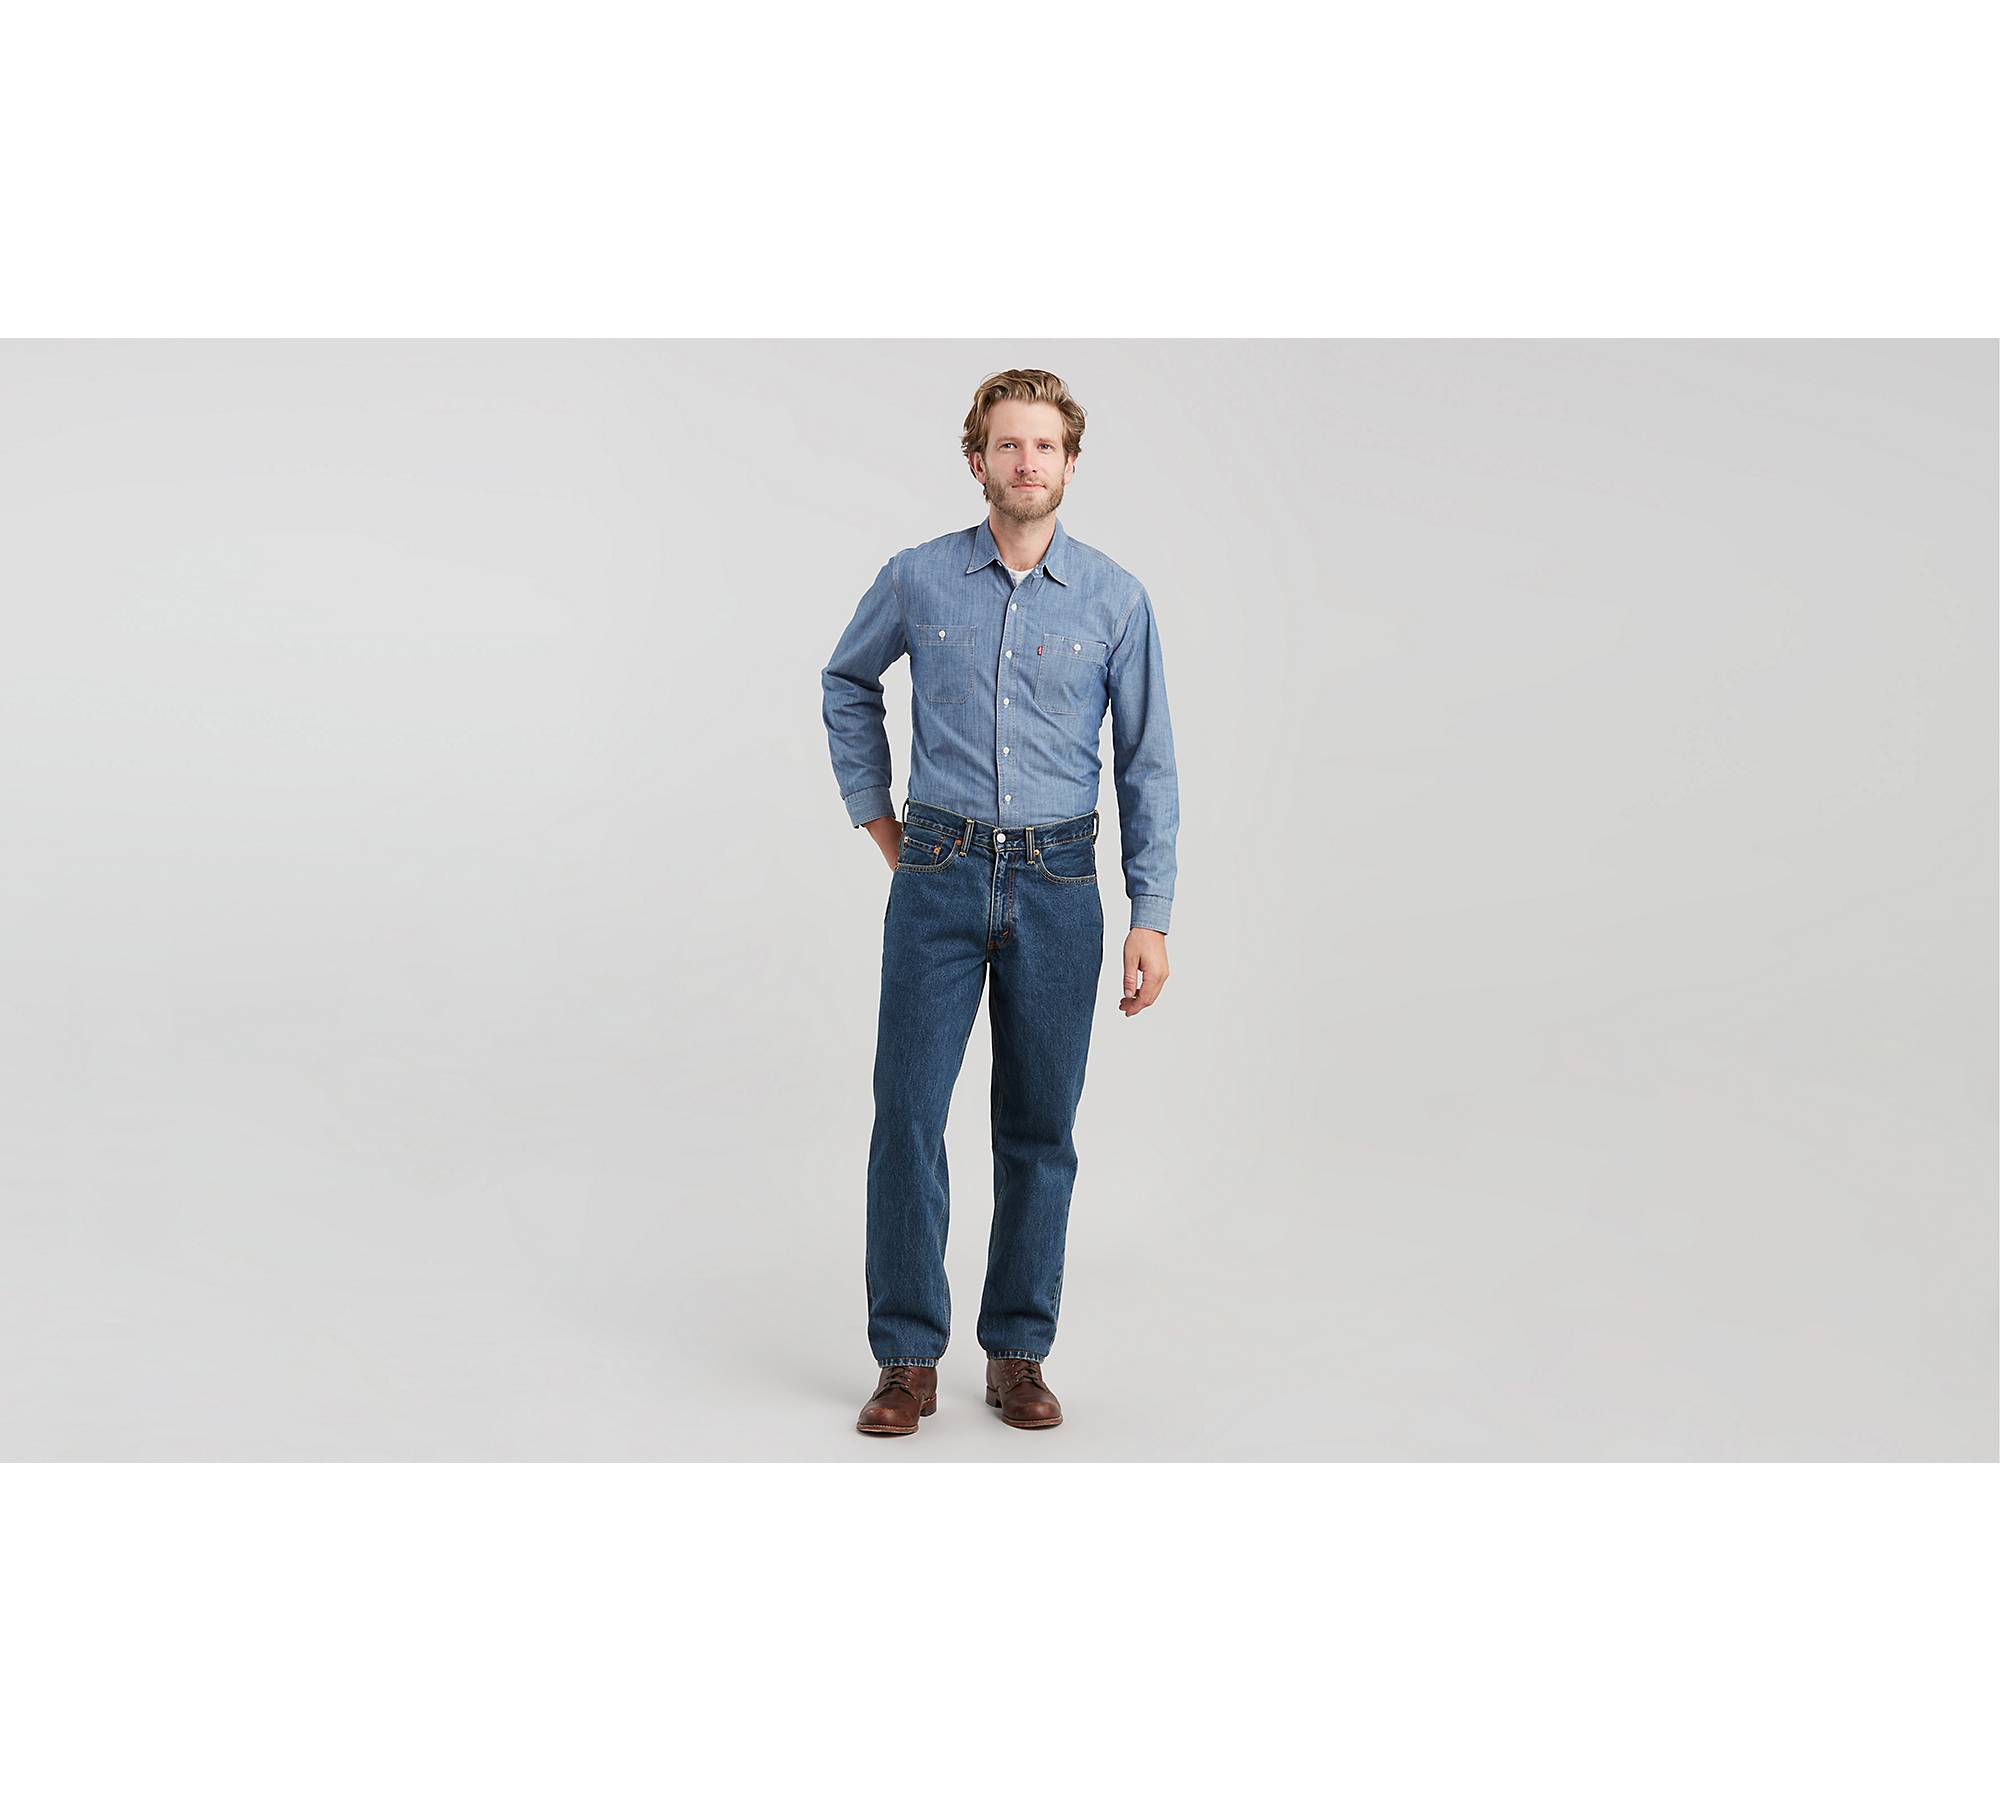 560™ Comfort Fit Men's Jeans (Big & Tall) 1